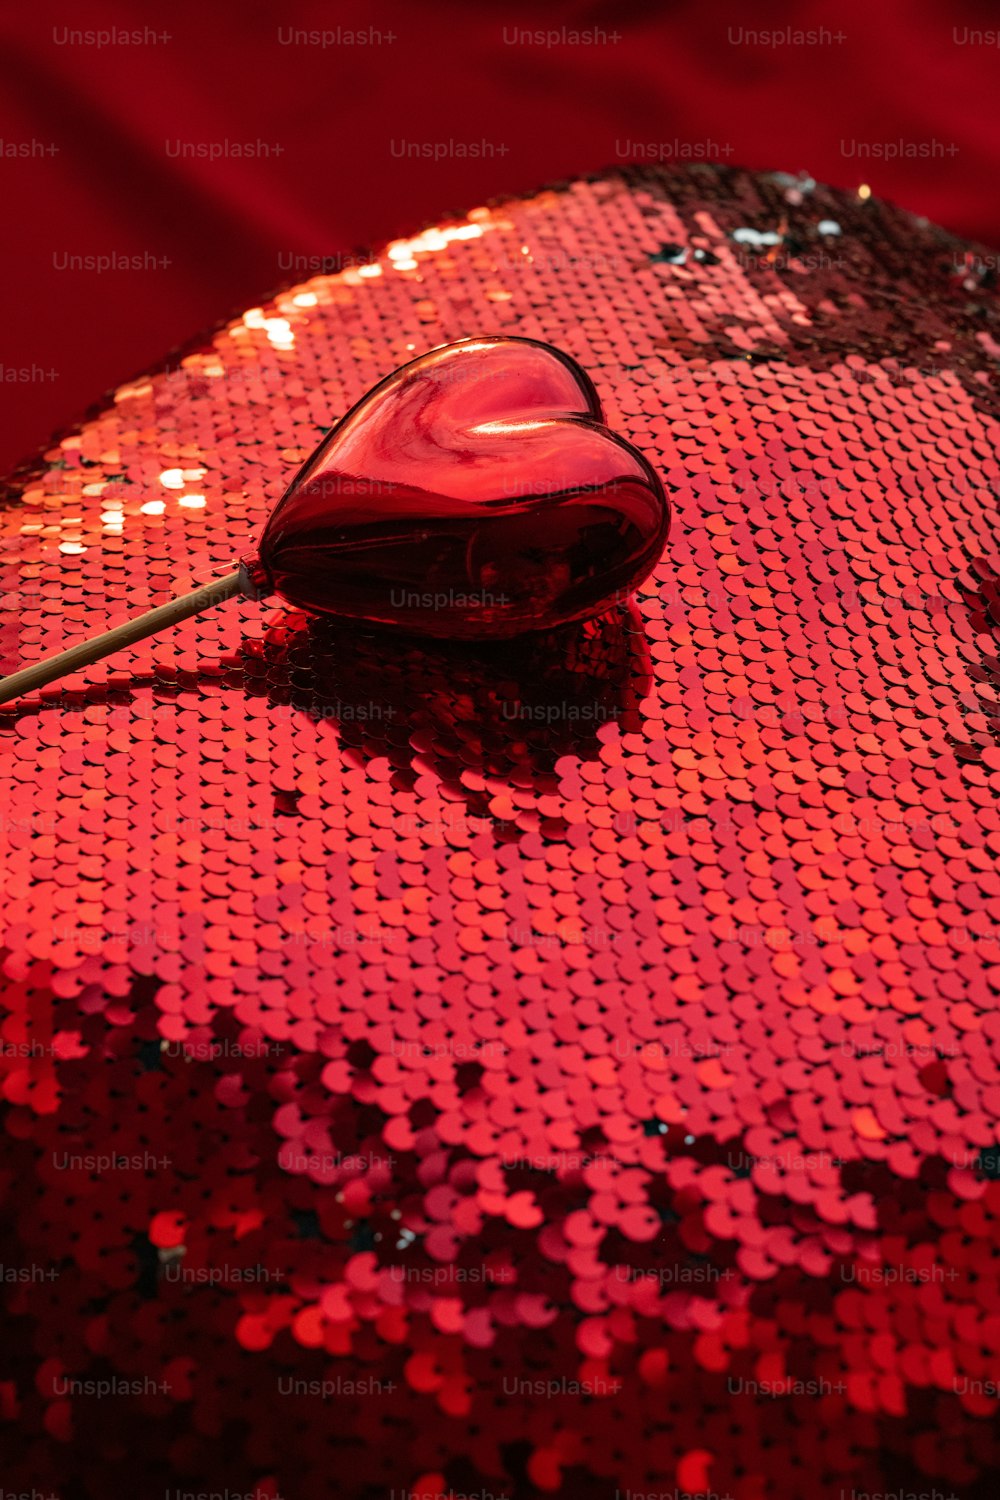 un mouse de computadora sentado encima de una superficie roja de lentejuelas